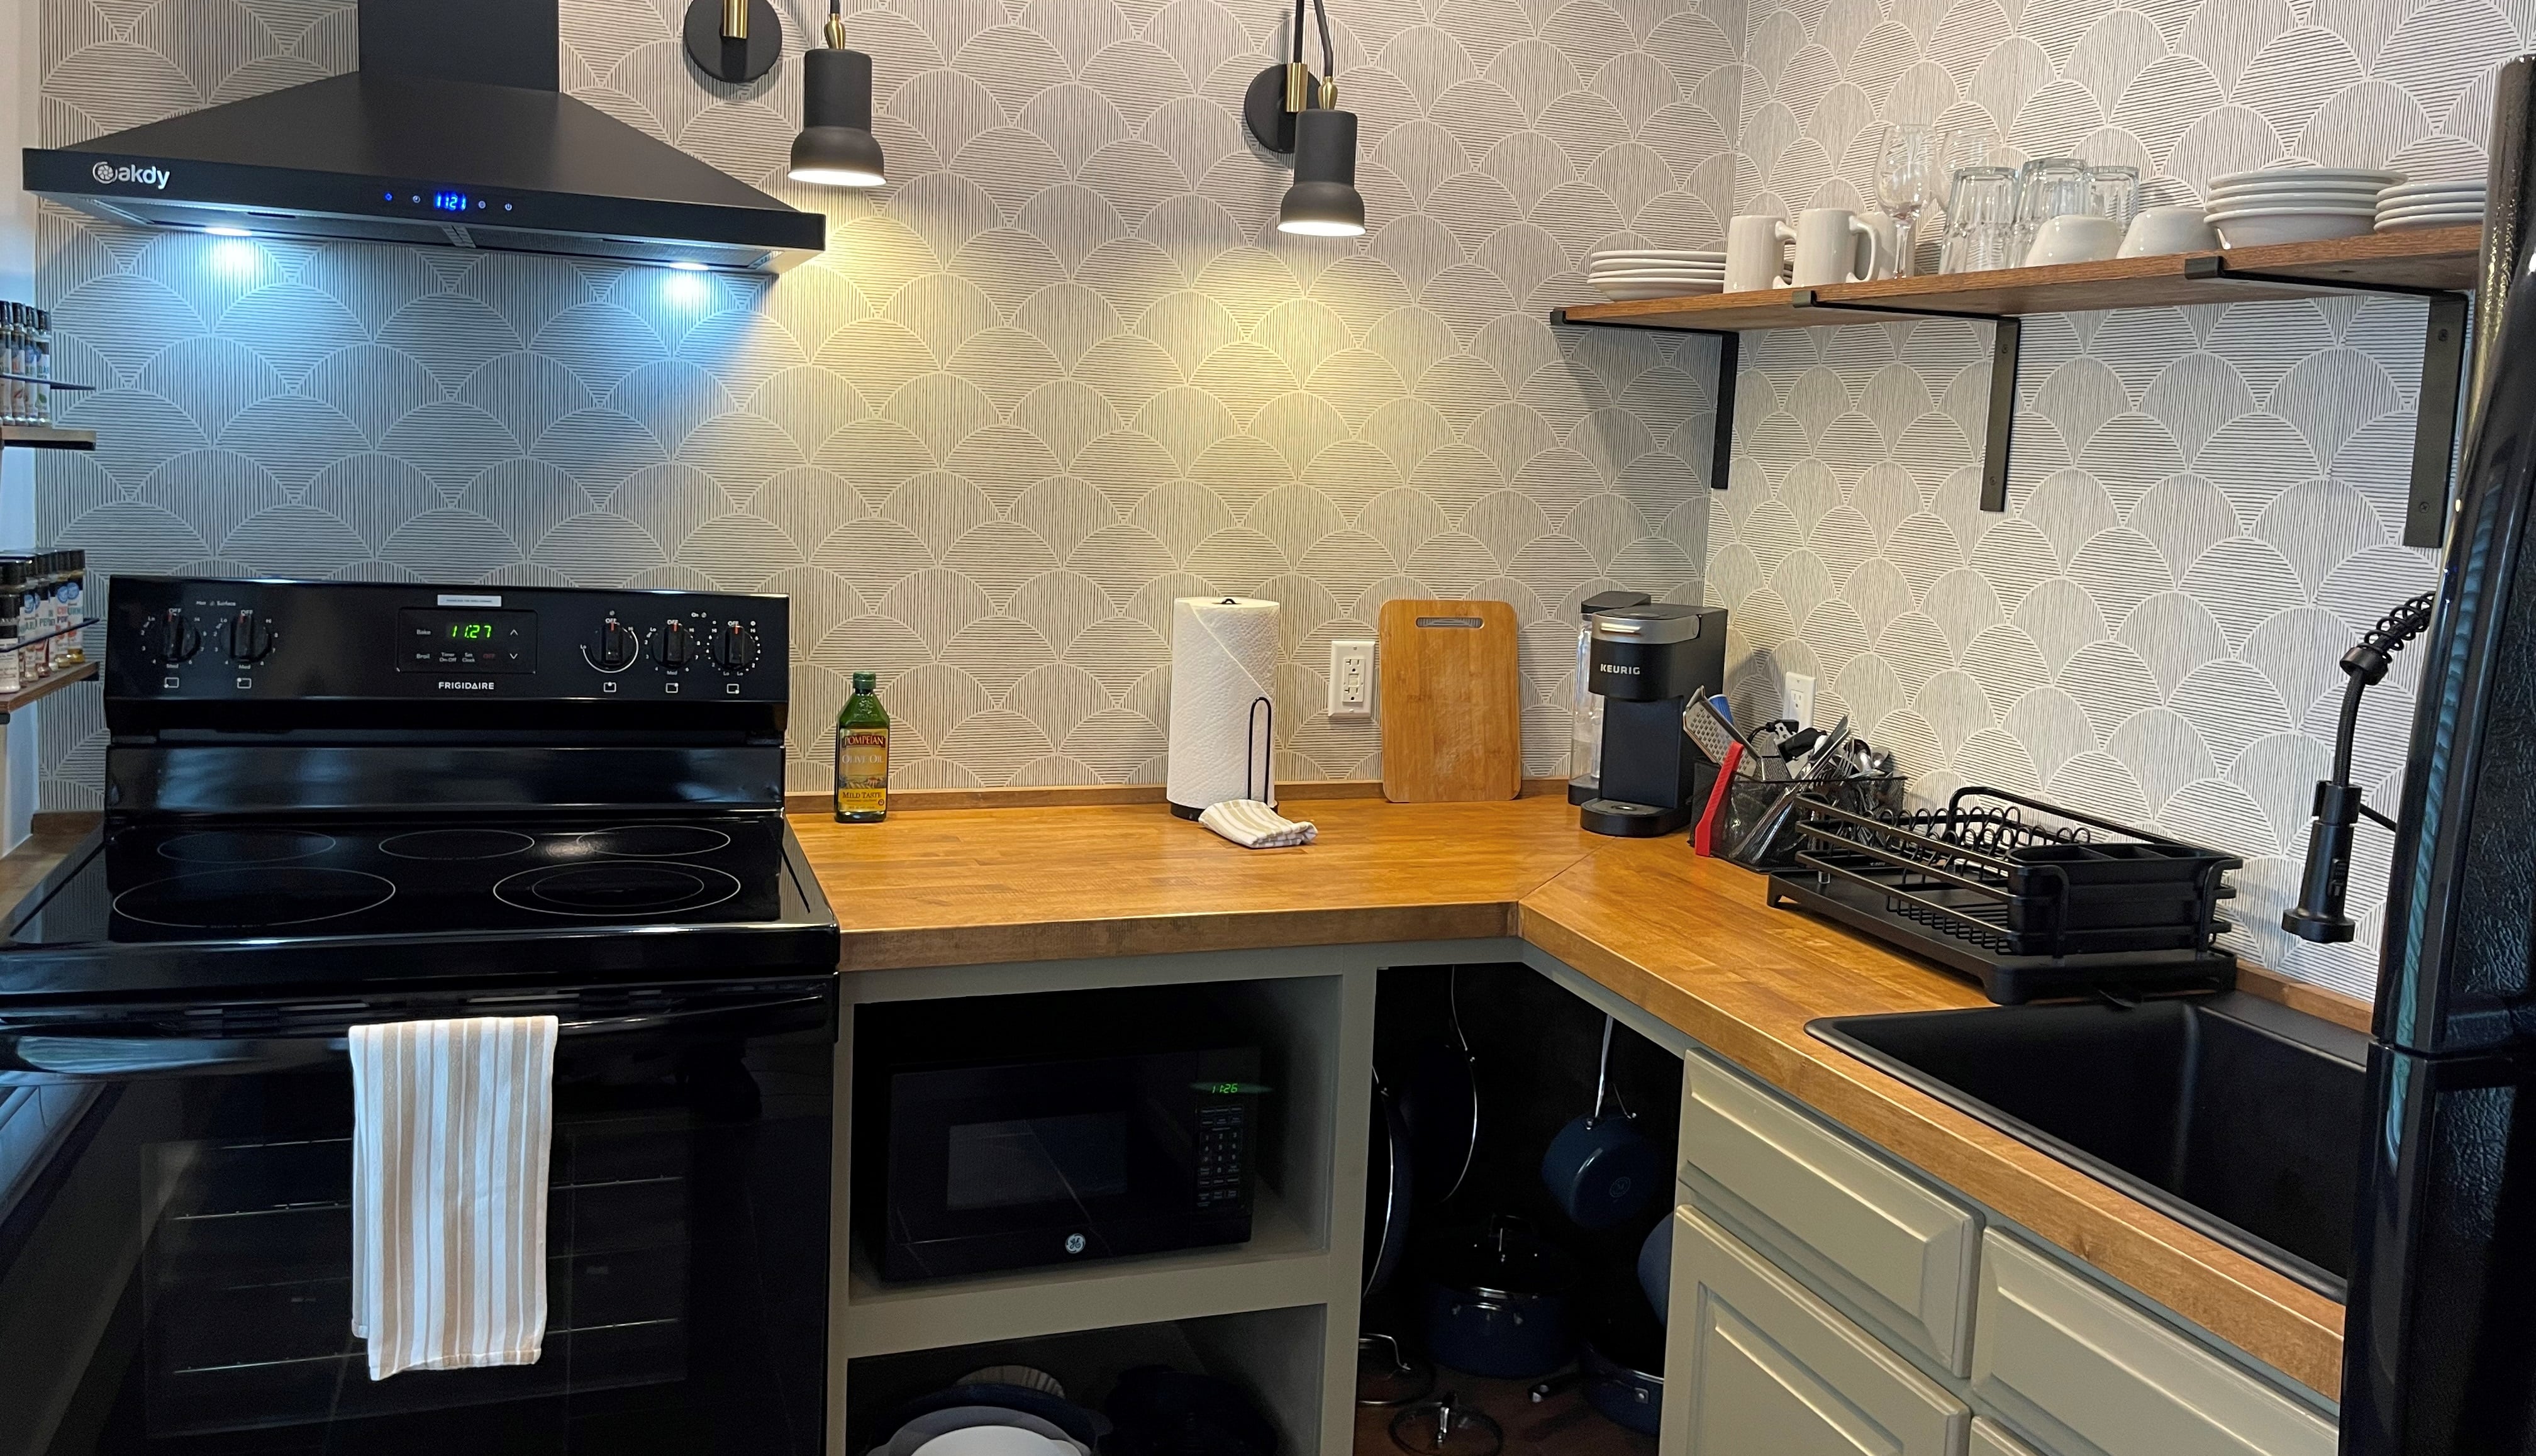 Updated kitchen appliances!